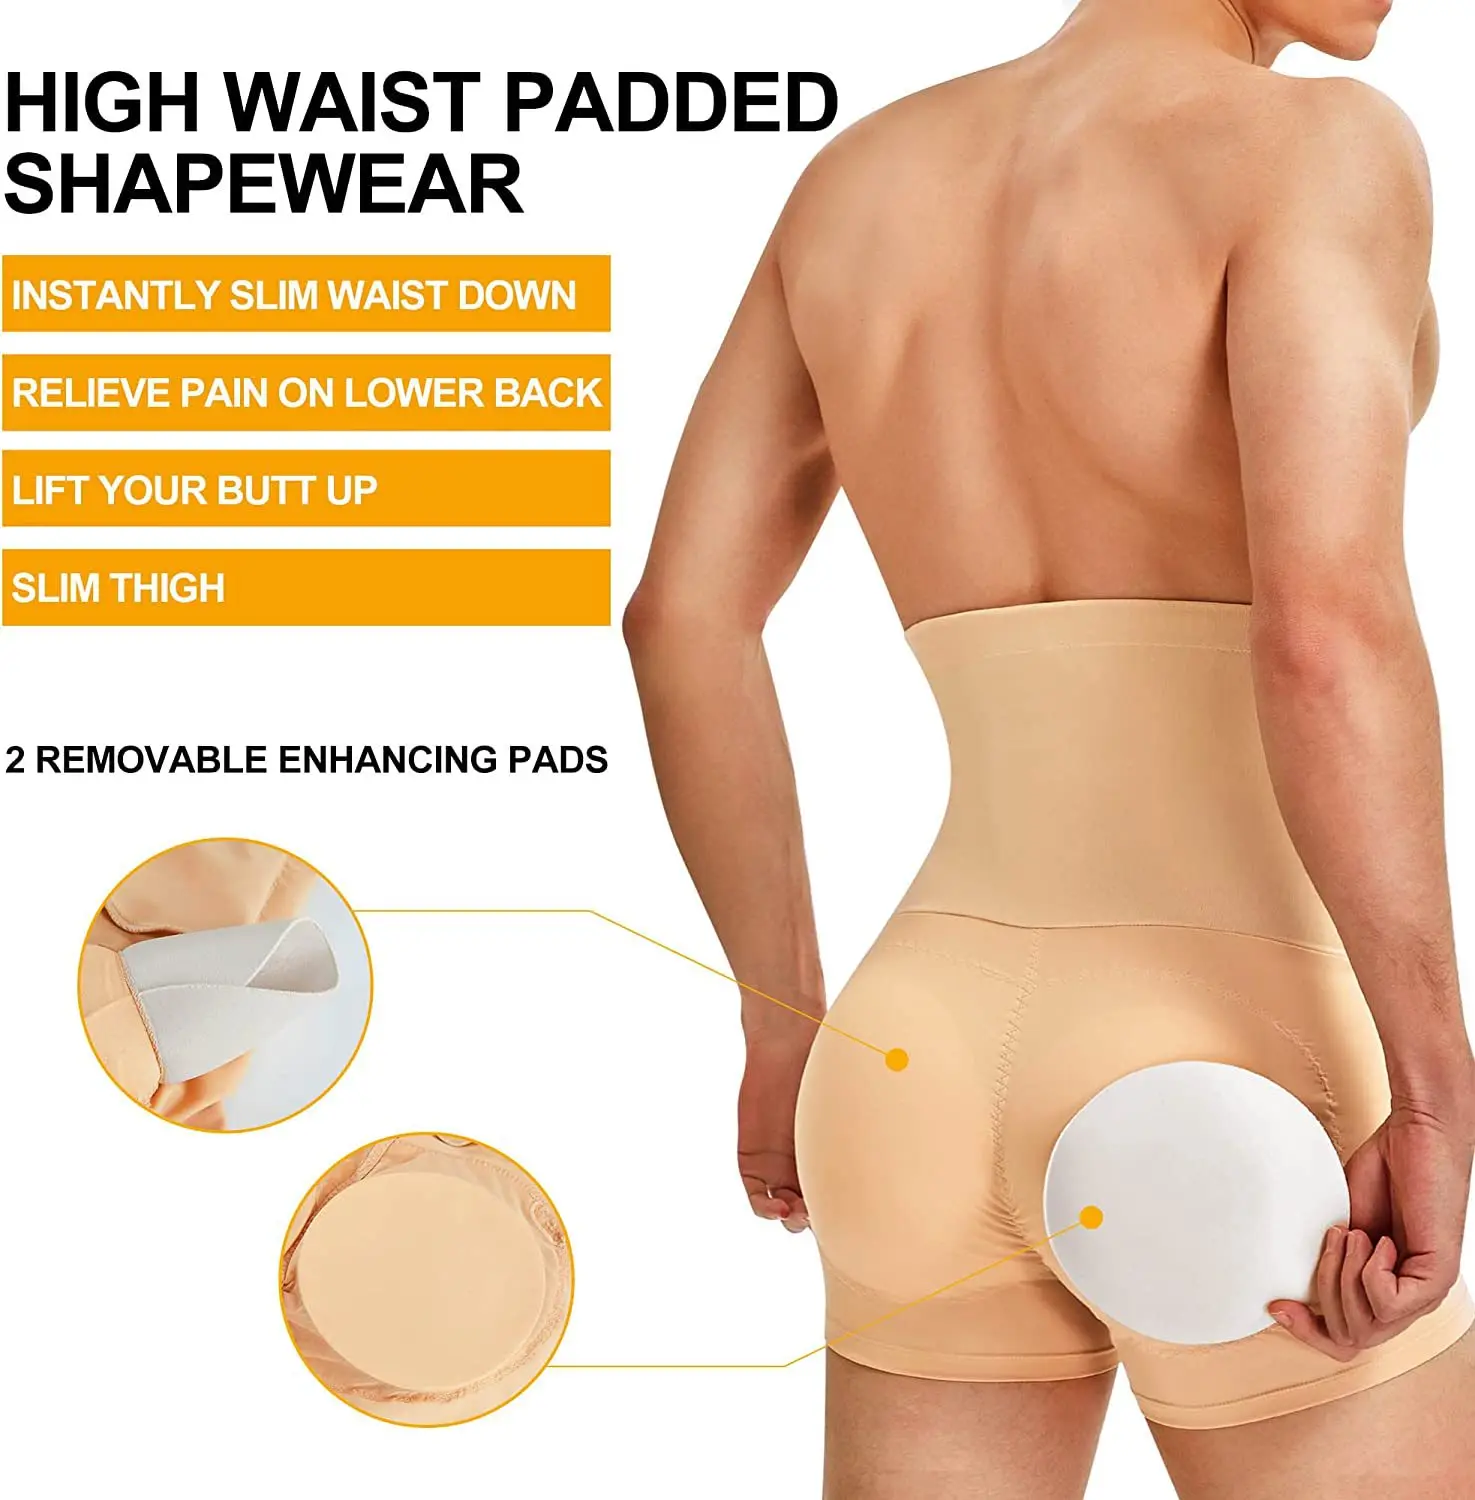 Men Padded Underwear Butt Lifter Hips Enhancer Fajas Boxer Briefs Push Up  Panty